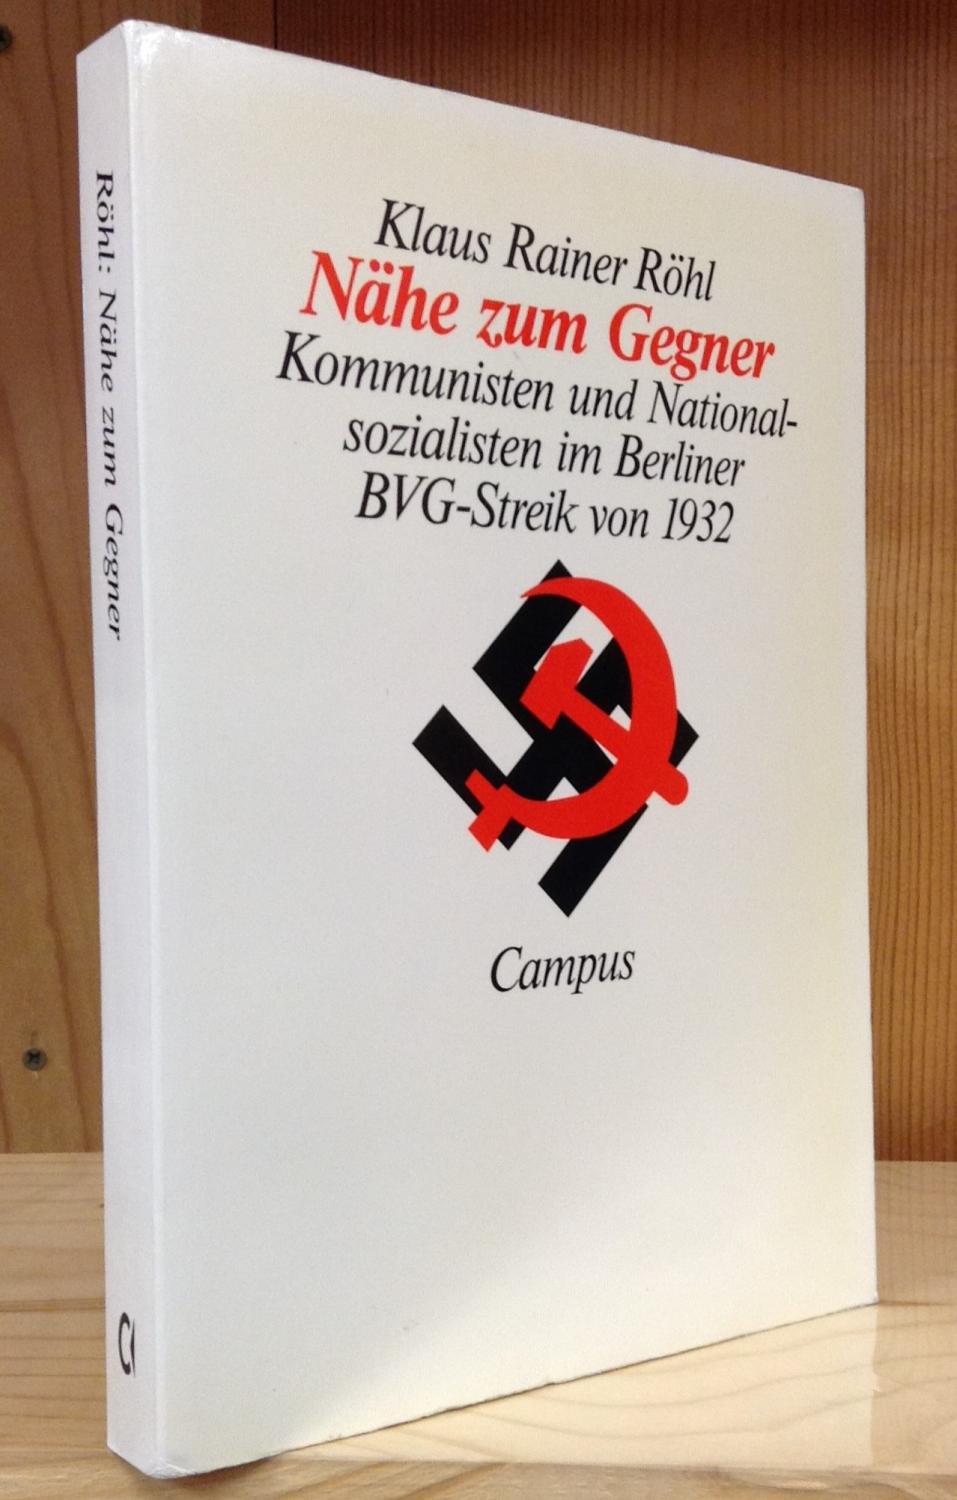 Nähe zum Gegner: Kommunisten und Nationalsozialisten im Berliner BVG-Streik von 1932 - Röhl, Klaus Rainer